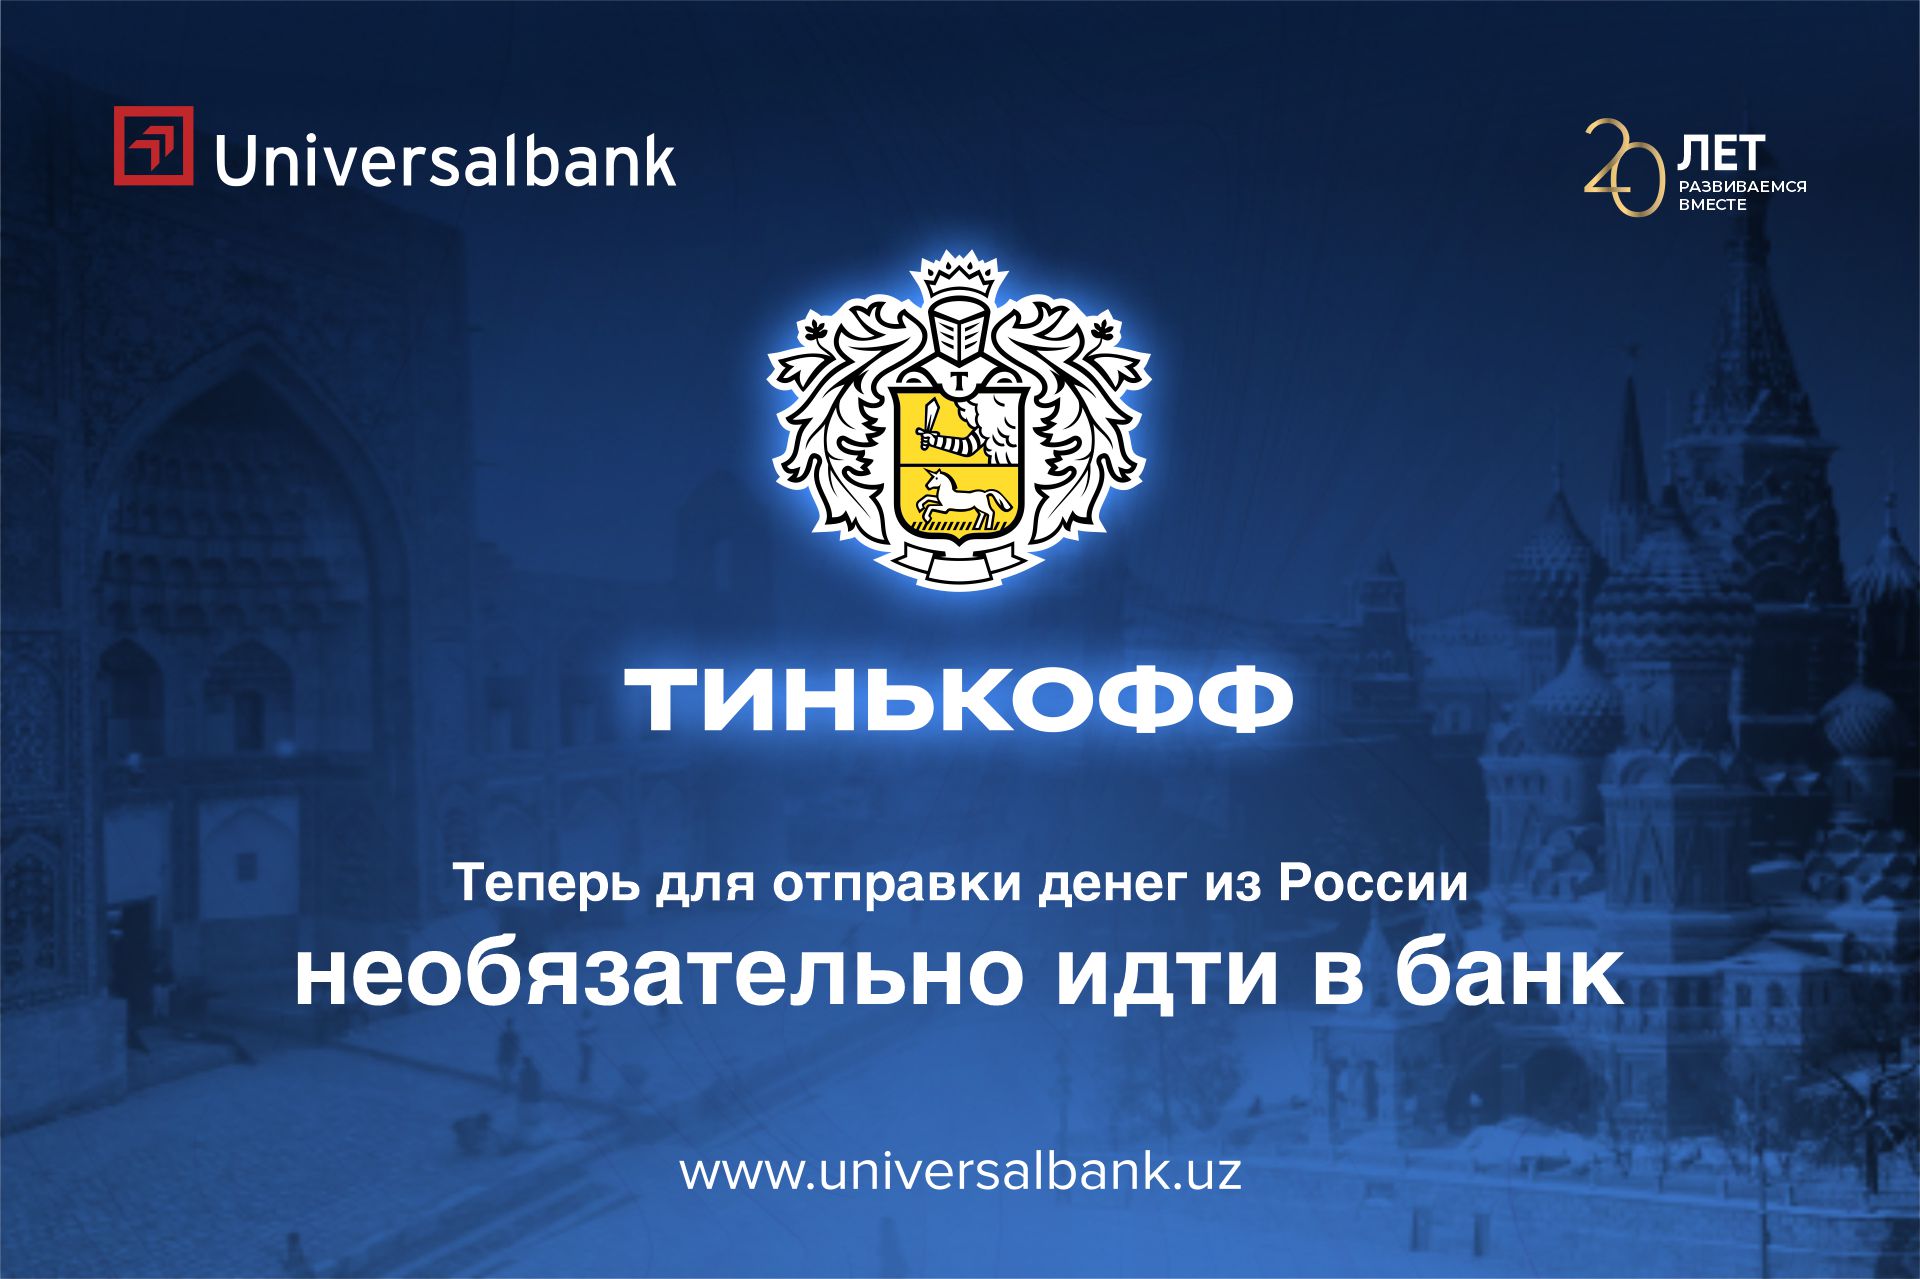 «Универсалбанк» одним из первых запустил переводы из России в Узбекистан совместно с «Тинькофф Банк»